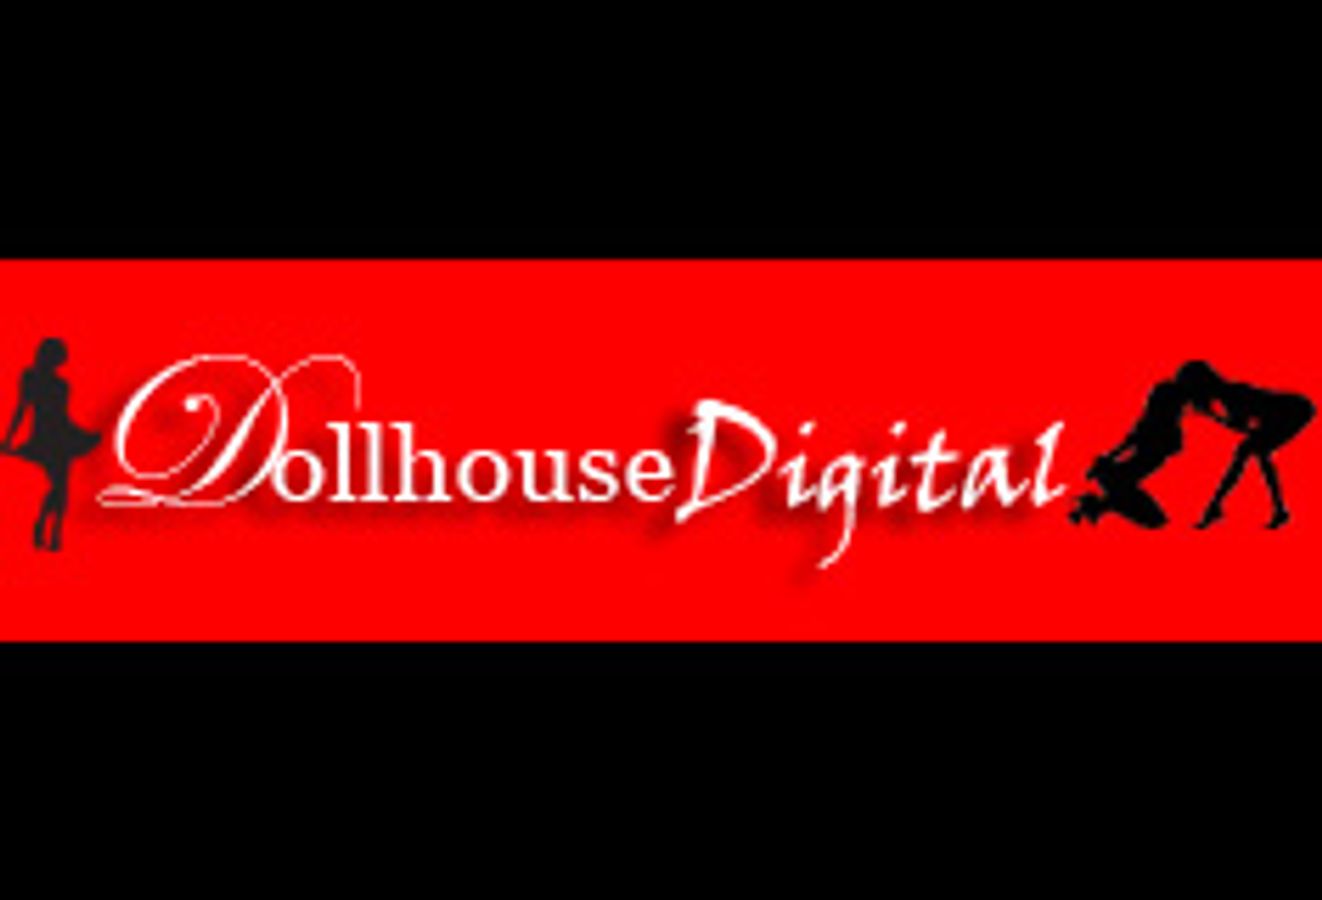 Dollhouse Digital